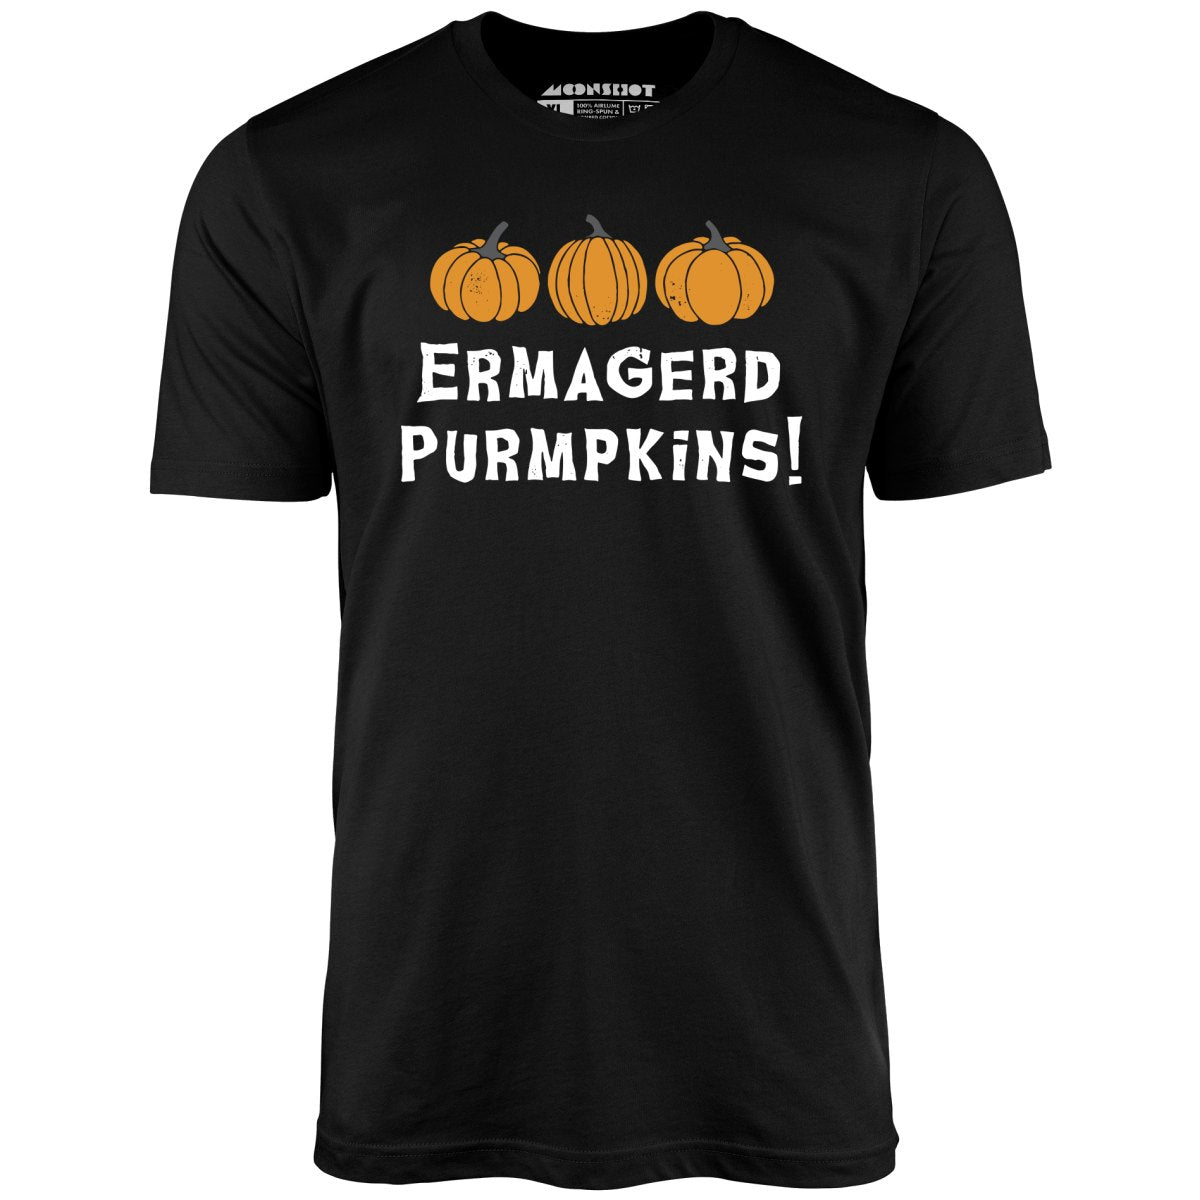 Ermagerd Purmpkins! - Unisex T-Shirt